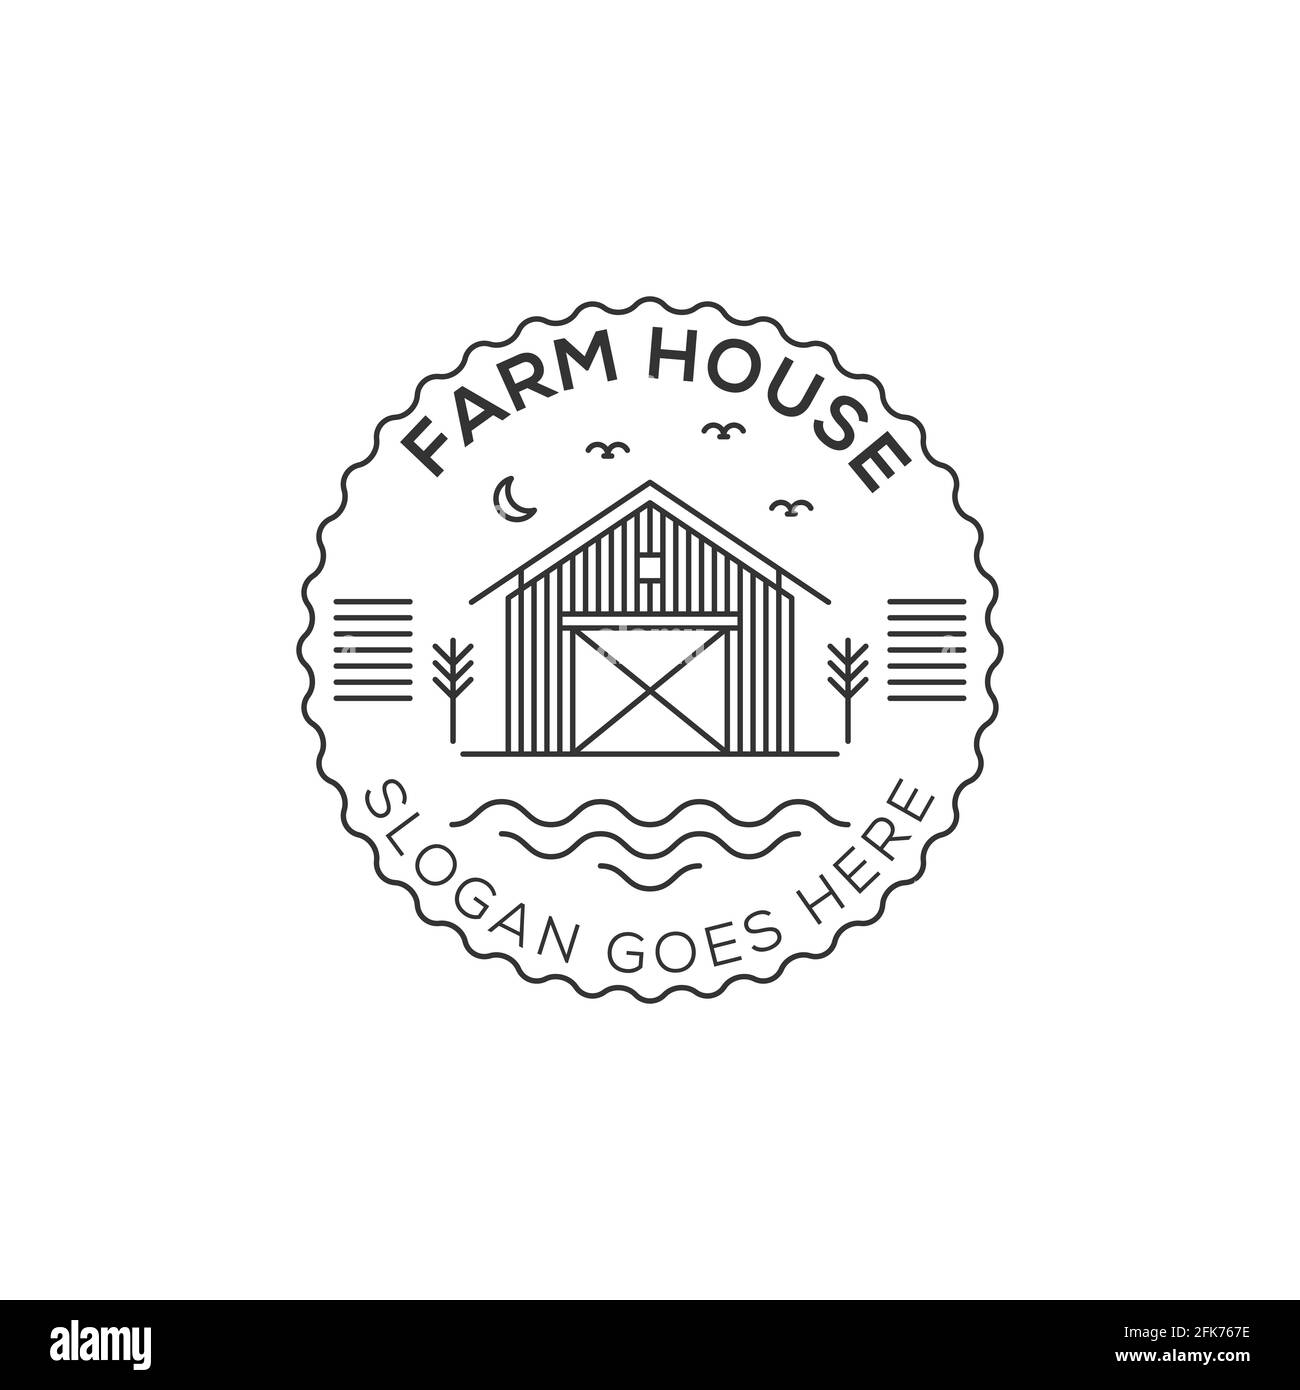 Illustrazione del logo Farm House. Vettore paesaggistico per prodotti naturali di fattoria. Icona del logo del profilo Illustrazione vettoriale. Illustrazione Vettoriale